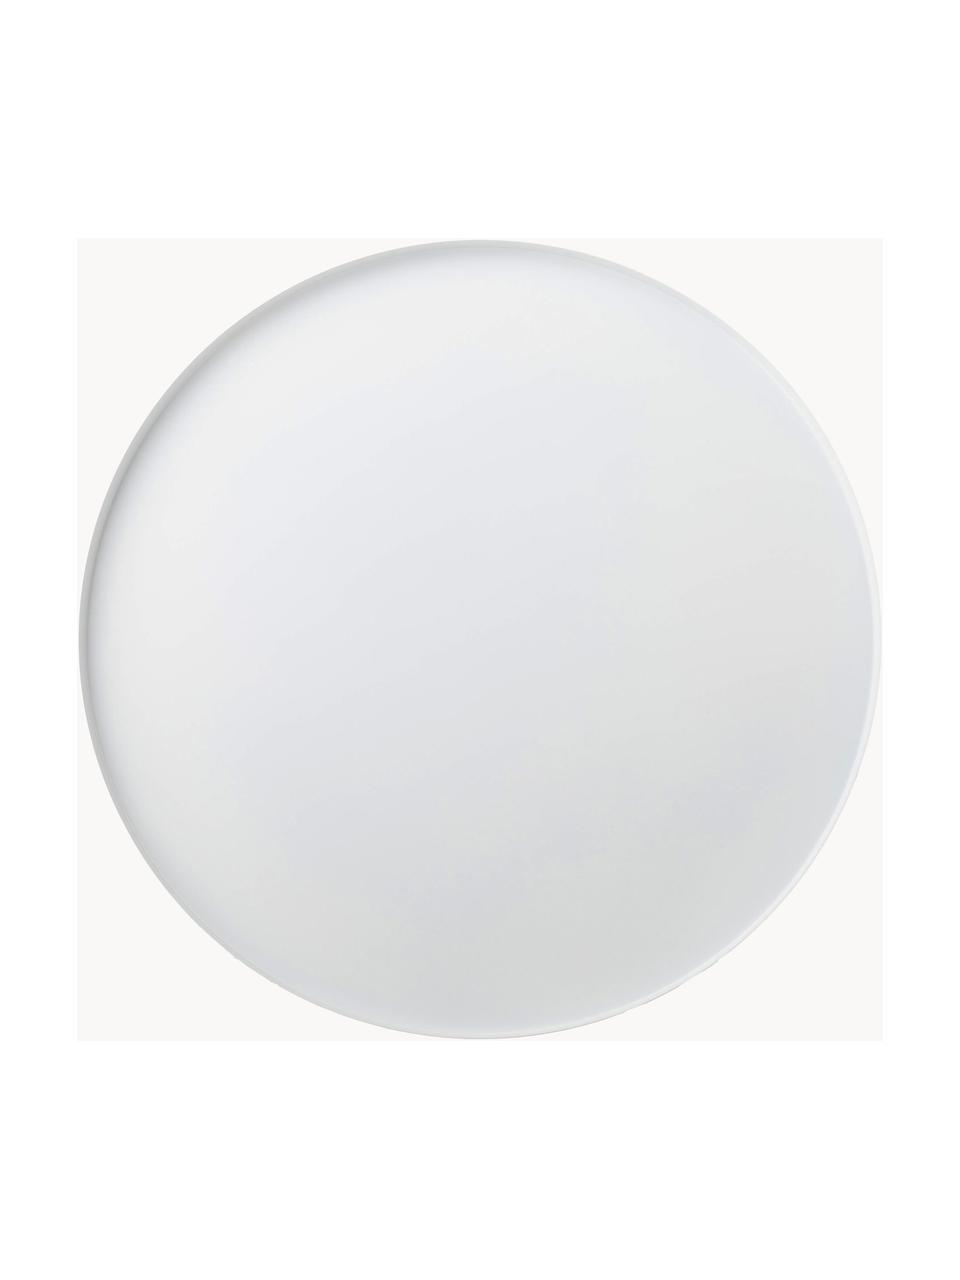 Okrągła taca dekoracyjna Circle, Stal szlachetna  malowana proszkowo, Biały, matowy, Ø 40 cm